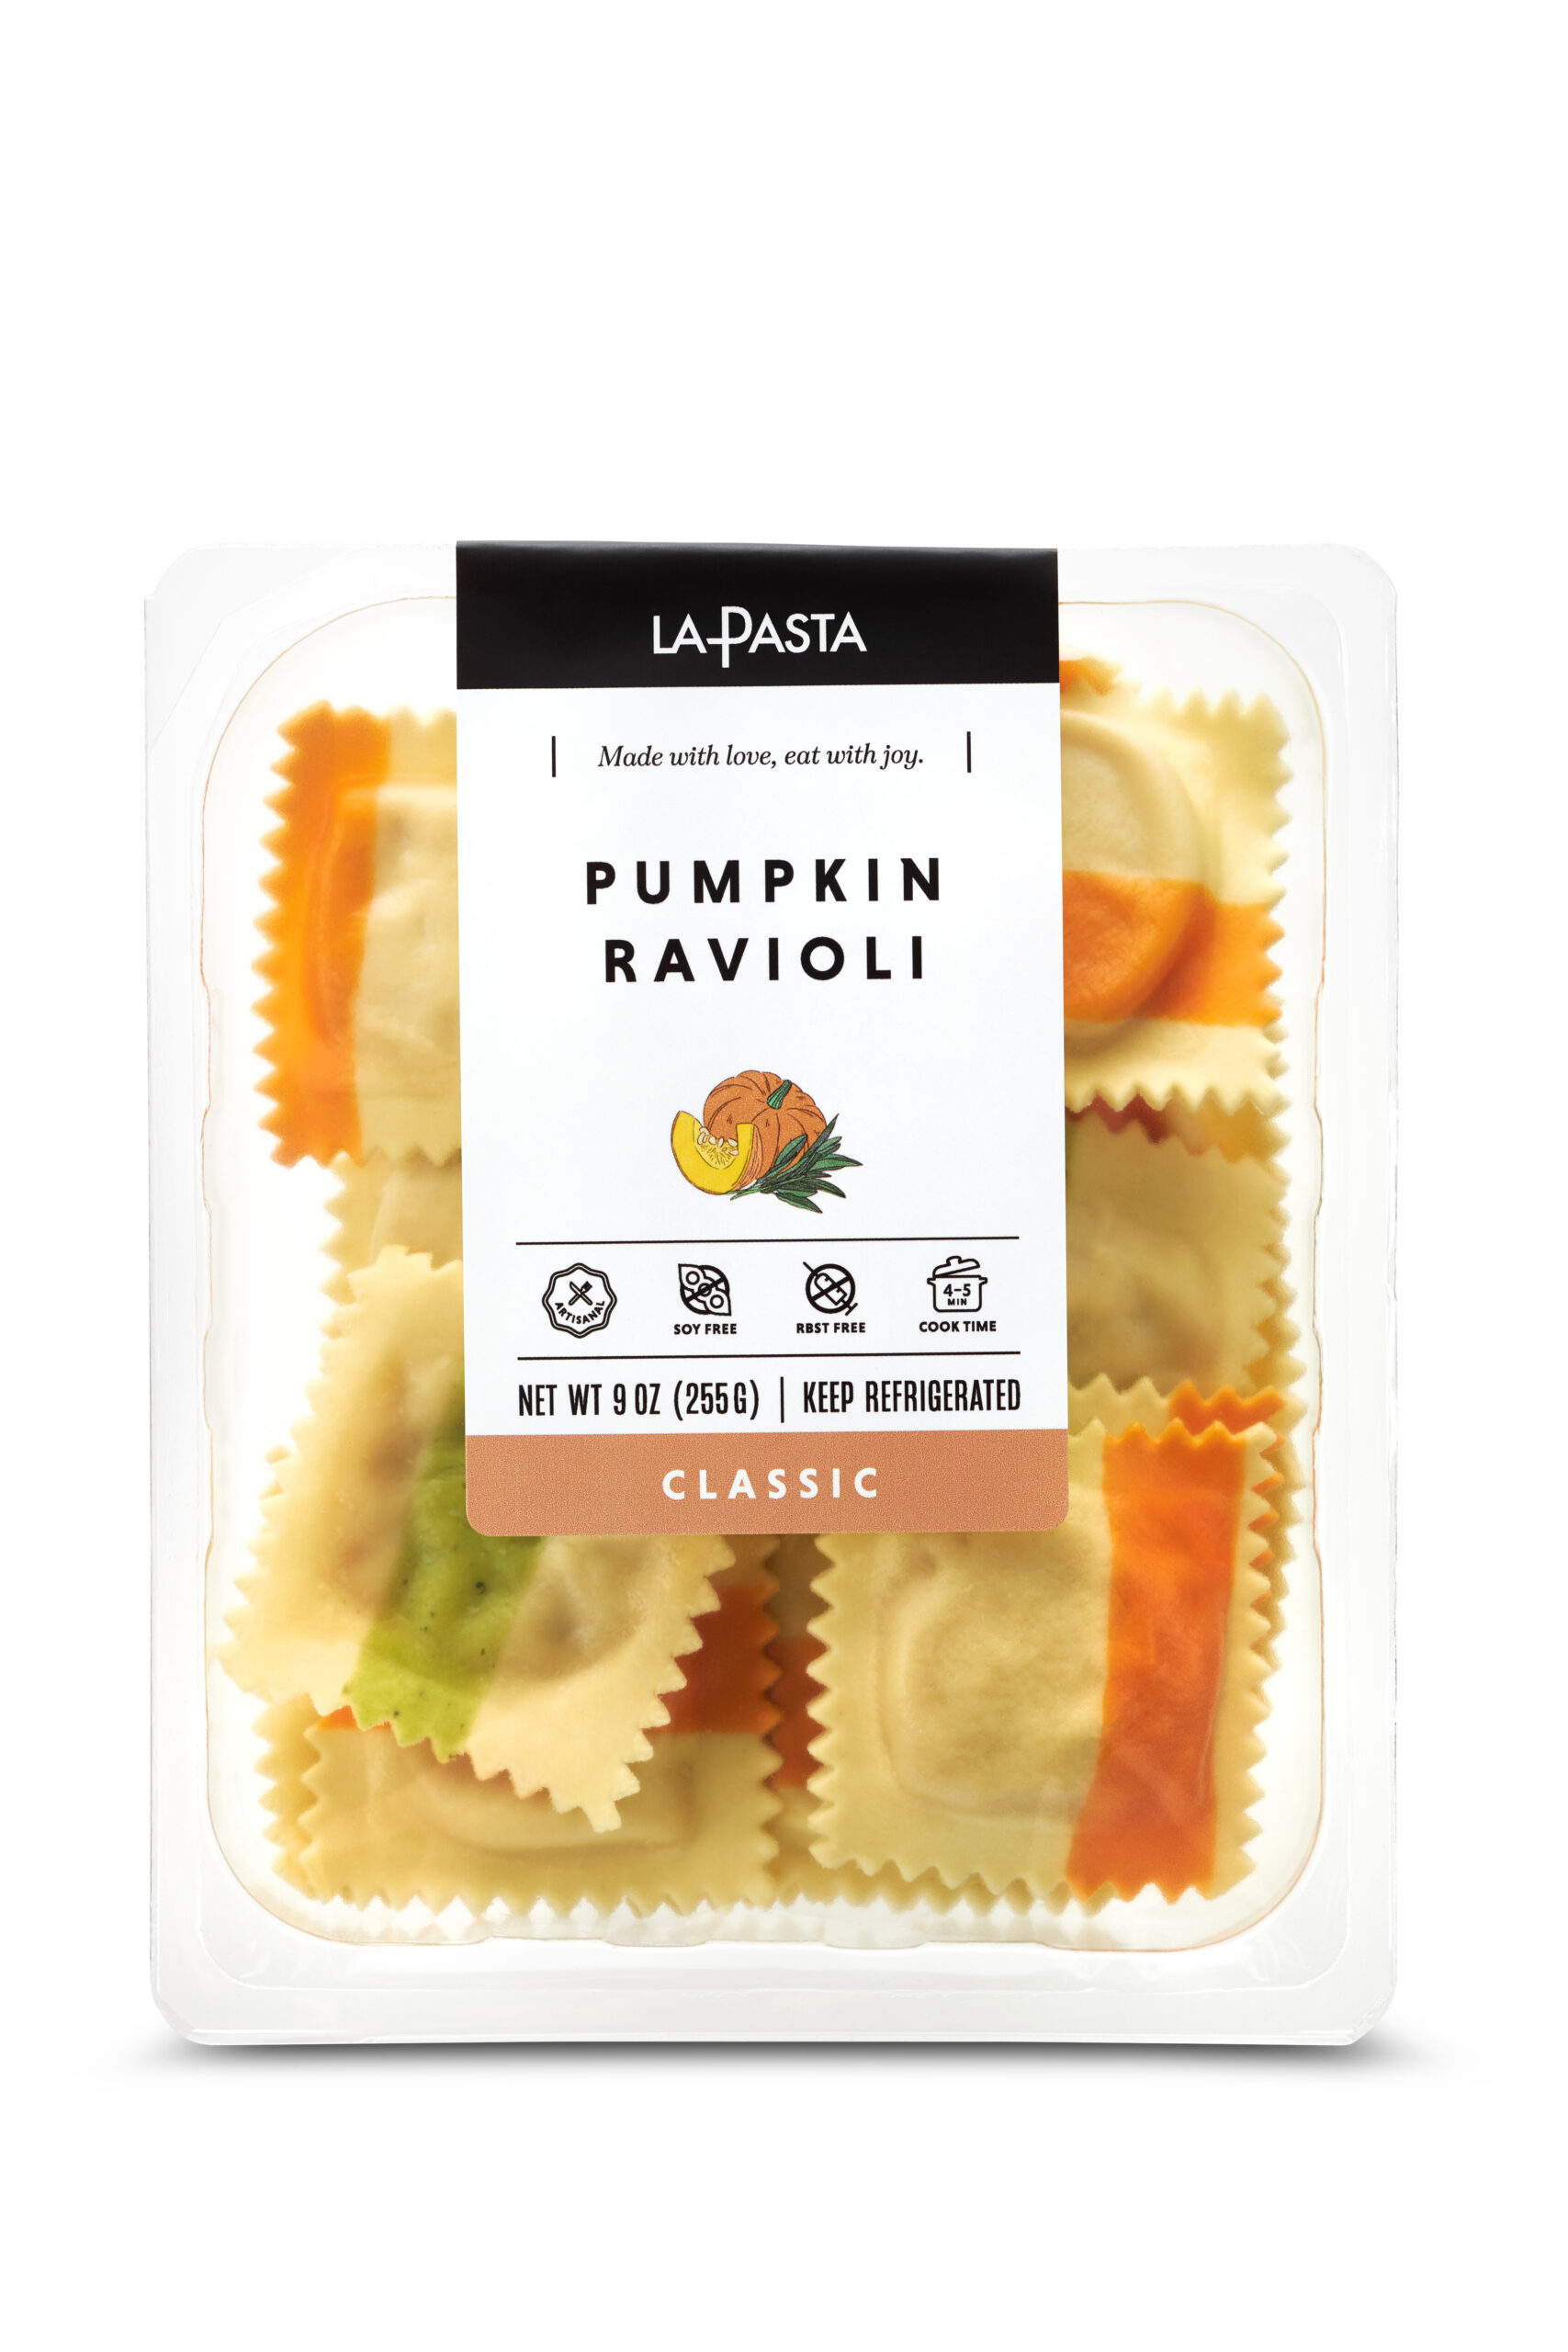 A package of pumpkin ravioli is shown.